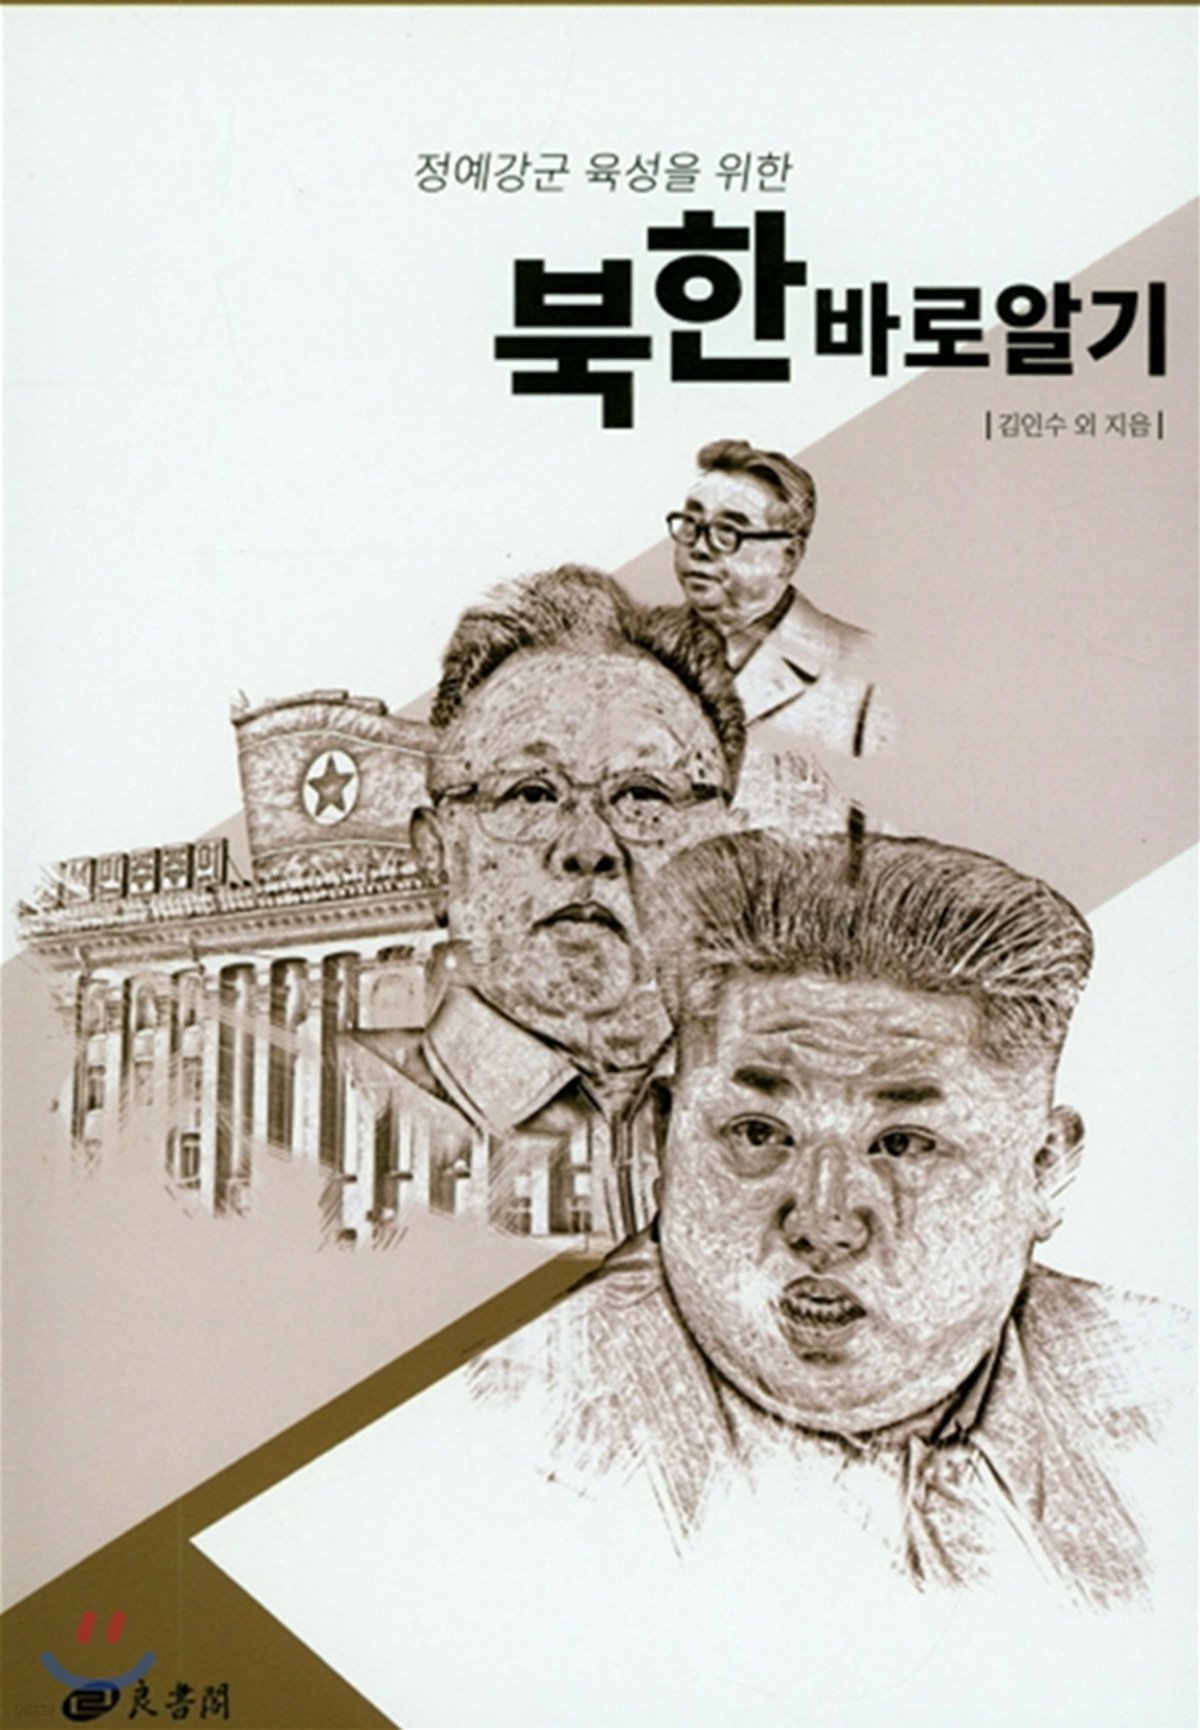 정예강군 육성을 위한 북한 바로 알기